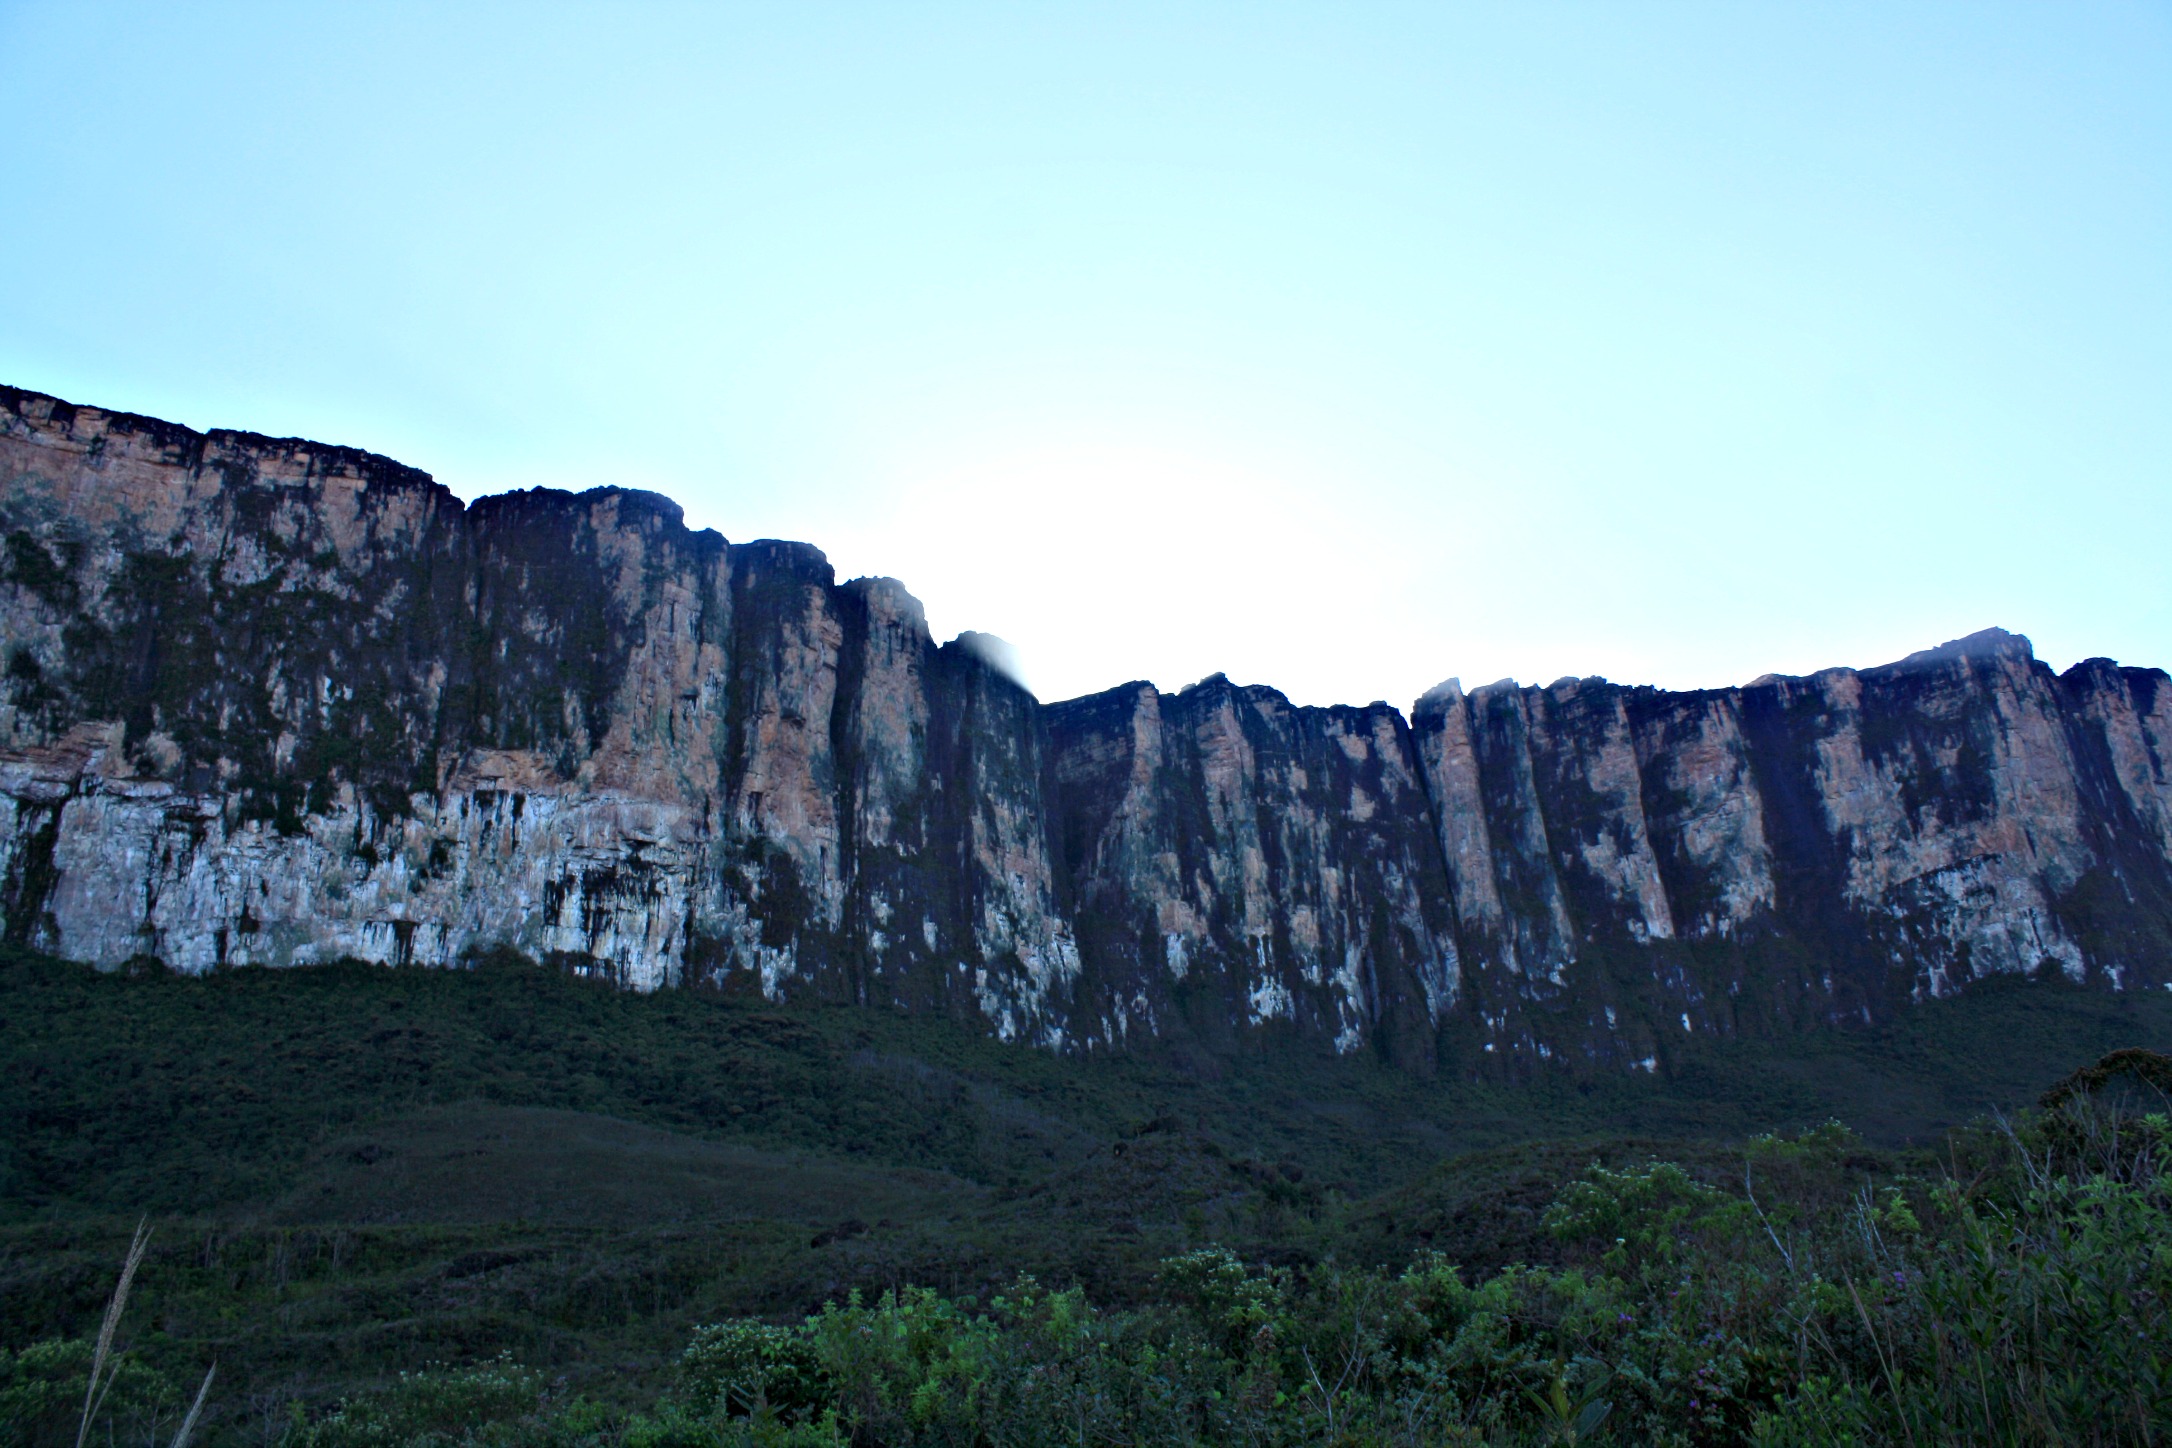 Morning at the base of Mount Roraima, Venezuela